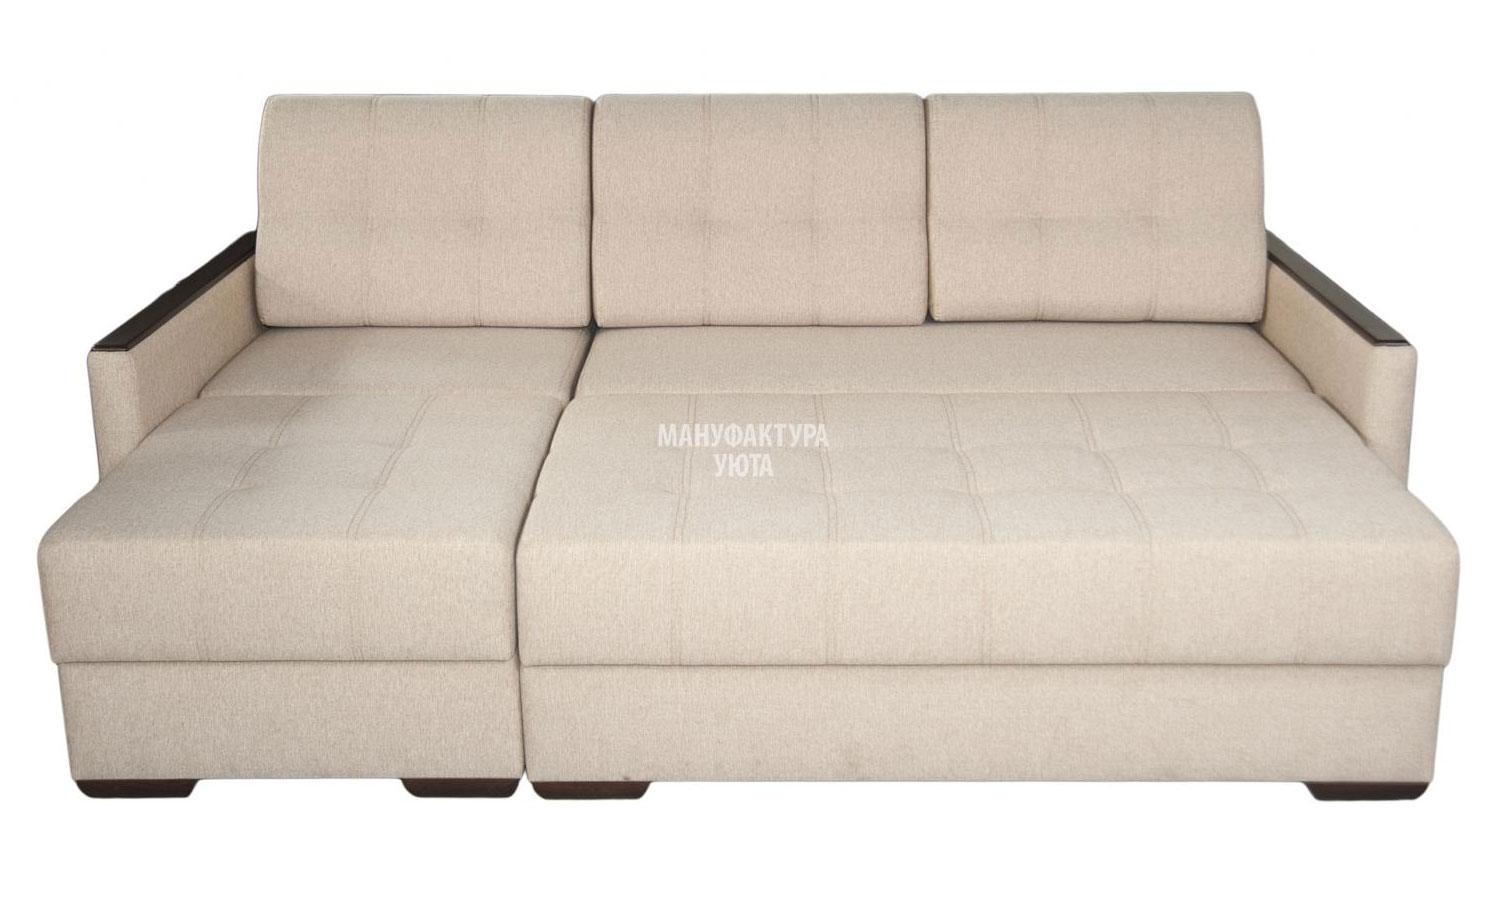 Купить диван Олимп-1 подлокотник №2 декор Мануфактура Уюта по выгодной ценев магазине Мебель XXI века